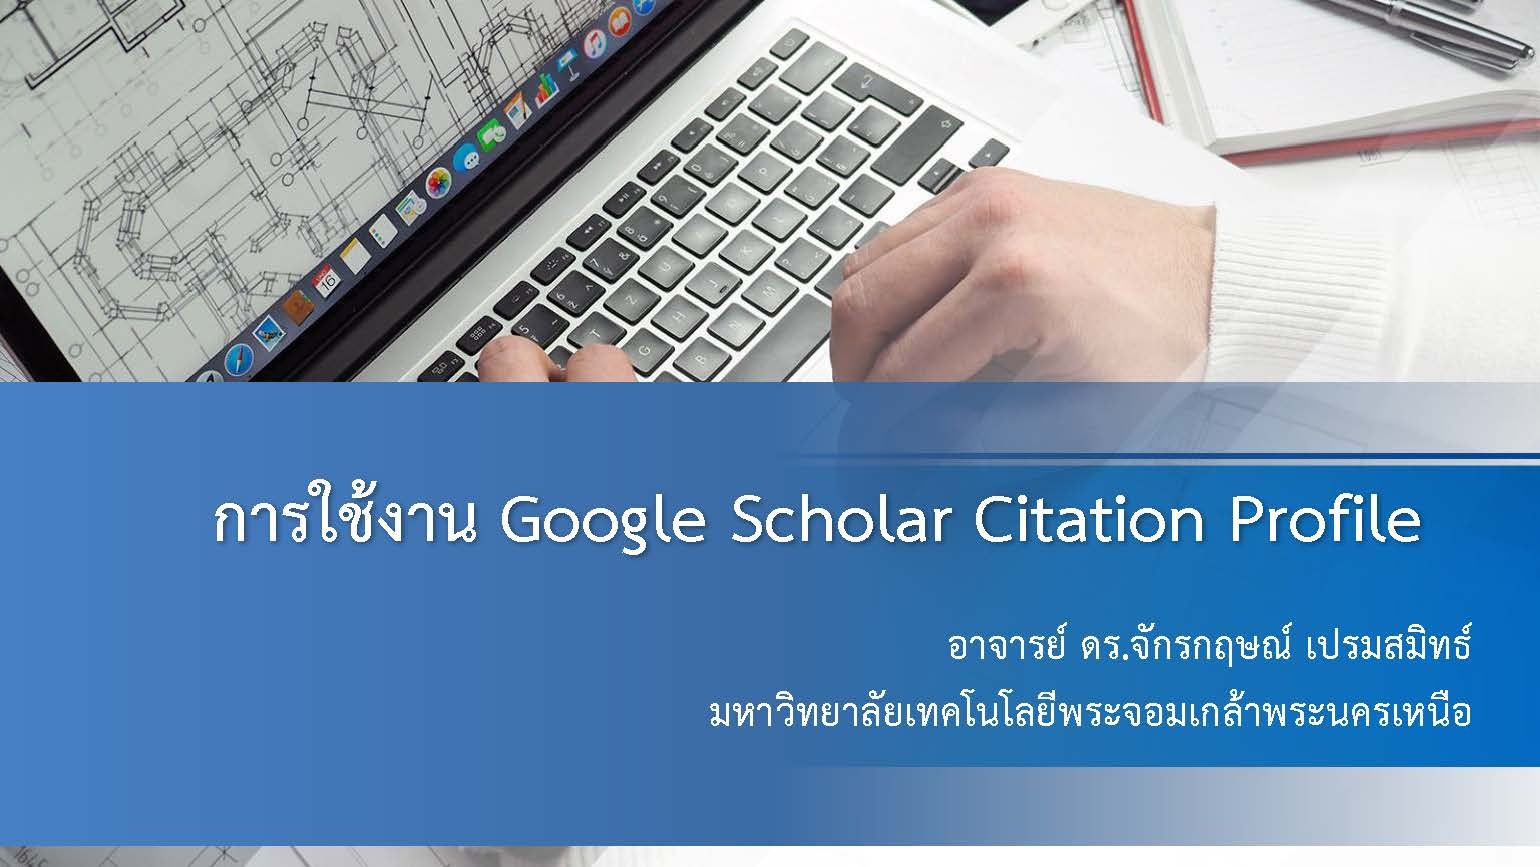 การใช้งาน Google Scholar Citation Profile